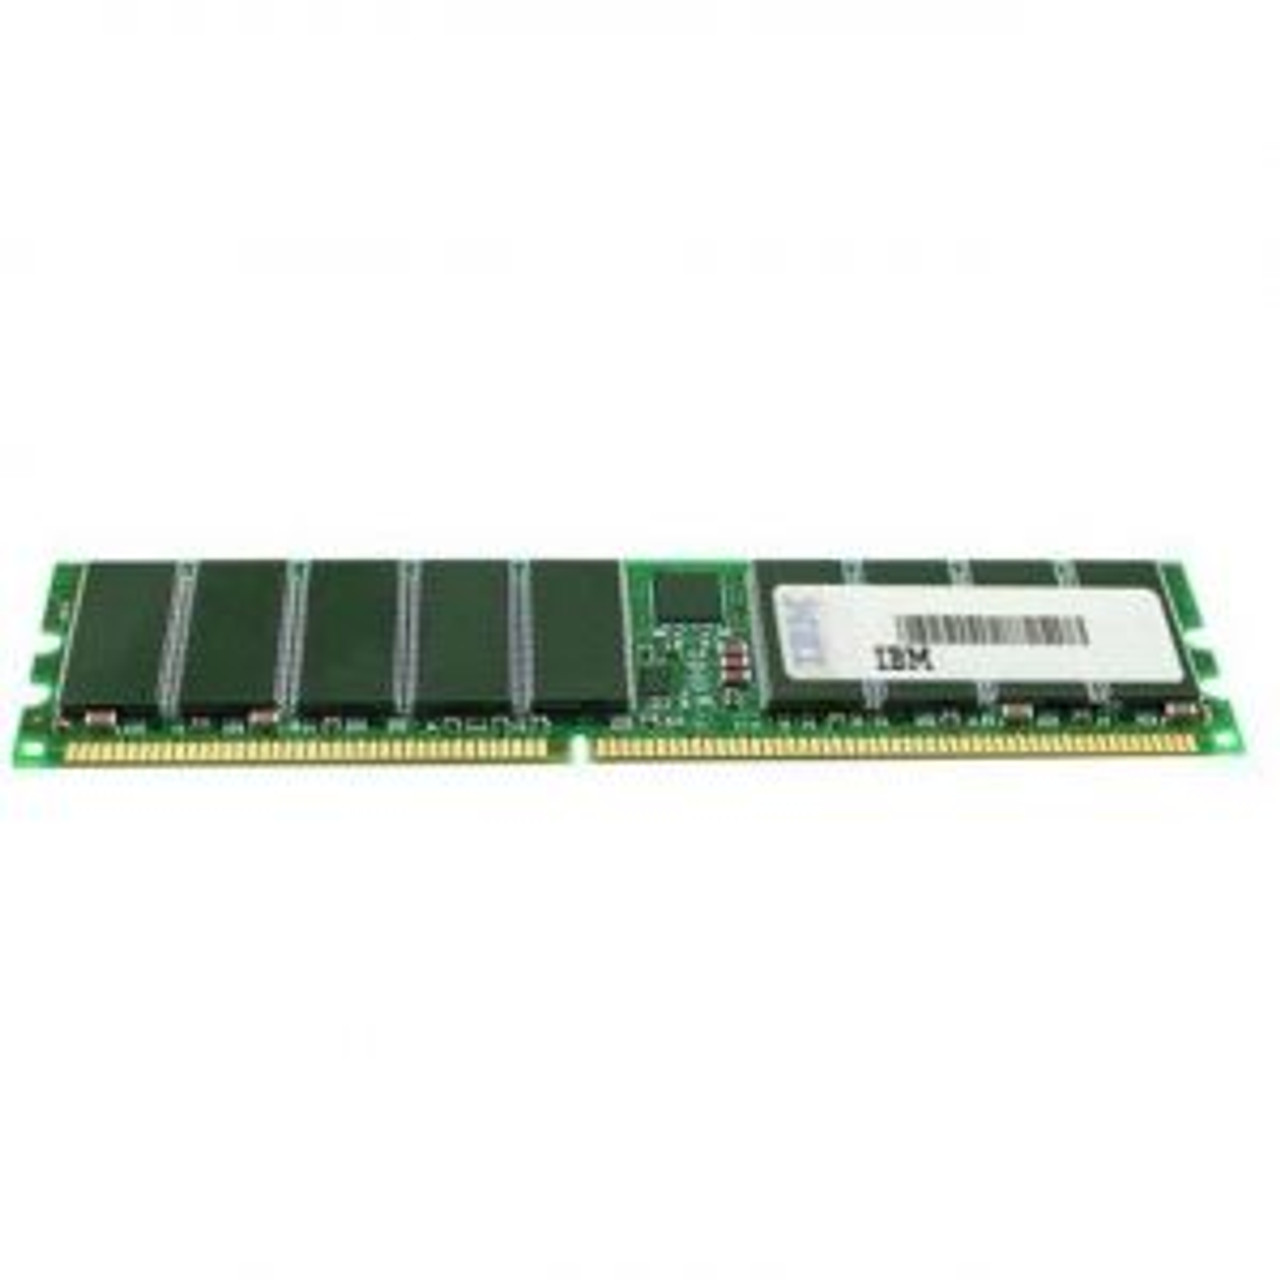 73P2278 IBM 1GB DDR Registered ECC PC-2700 333Mhz 2Rx4 Memory